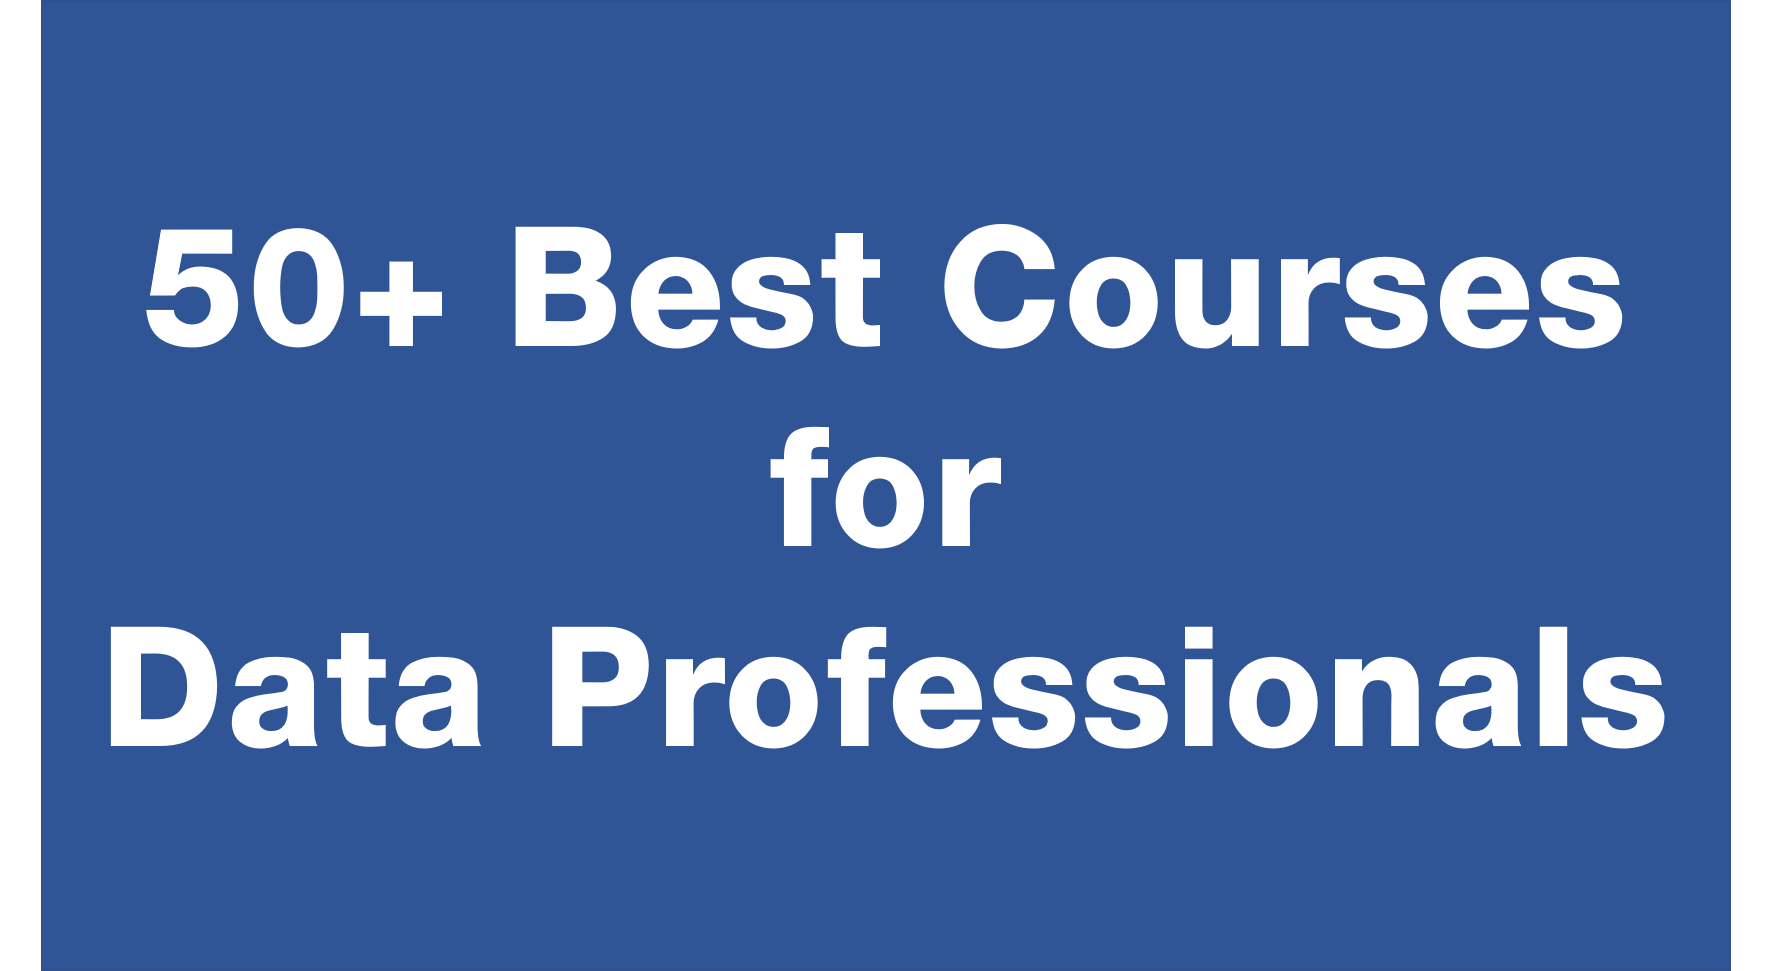 Best courses